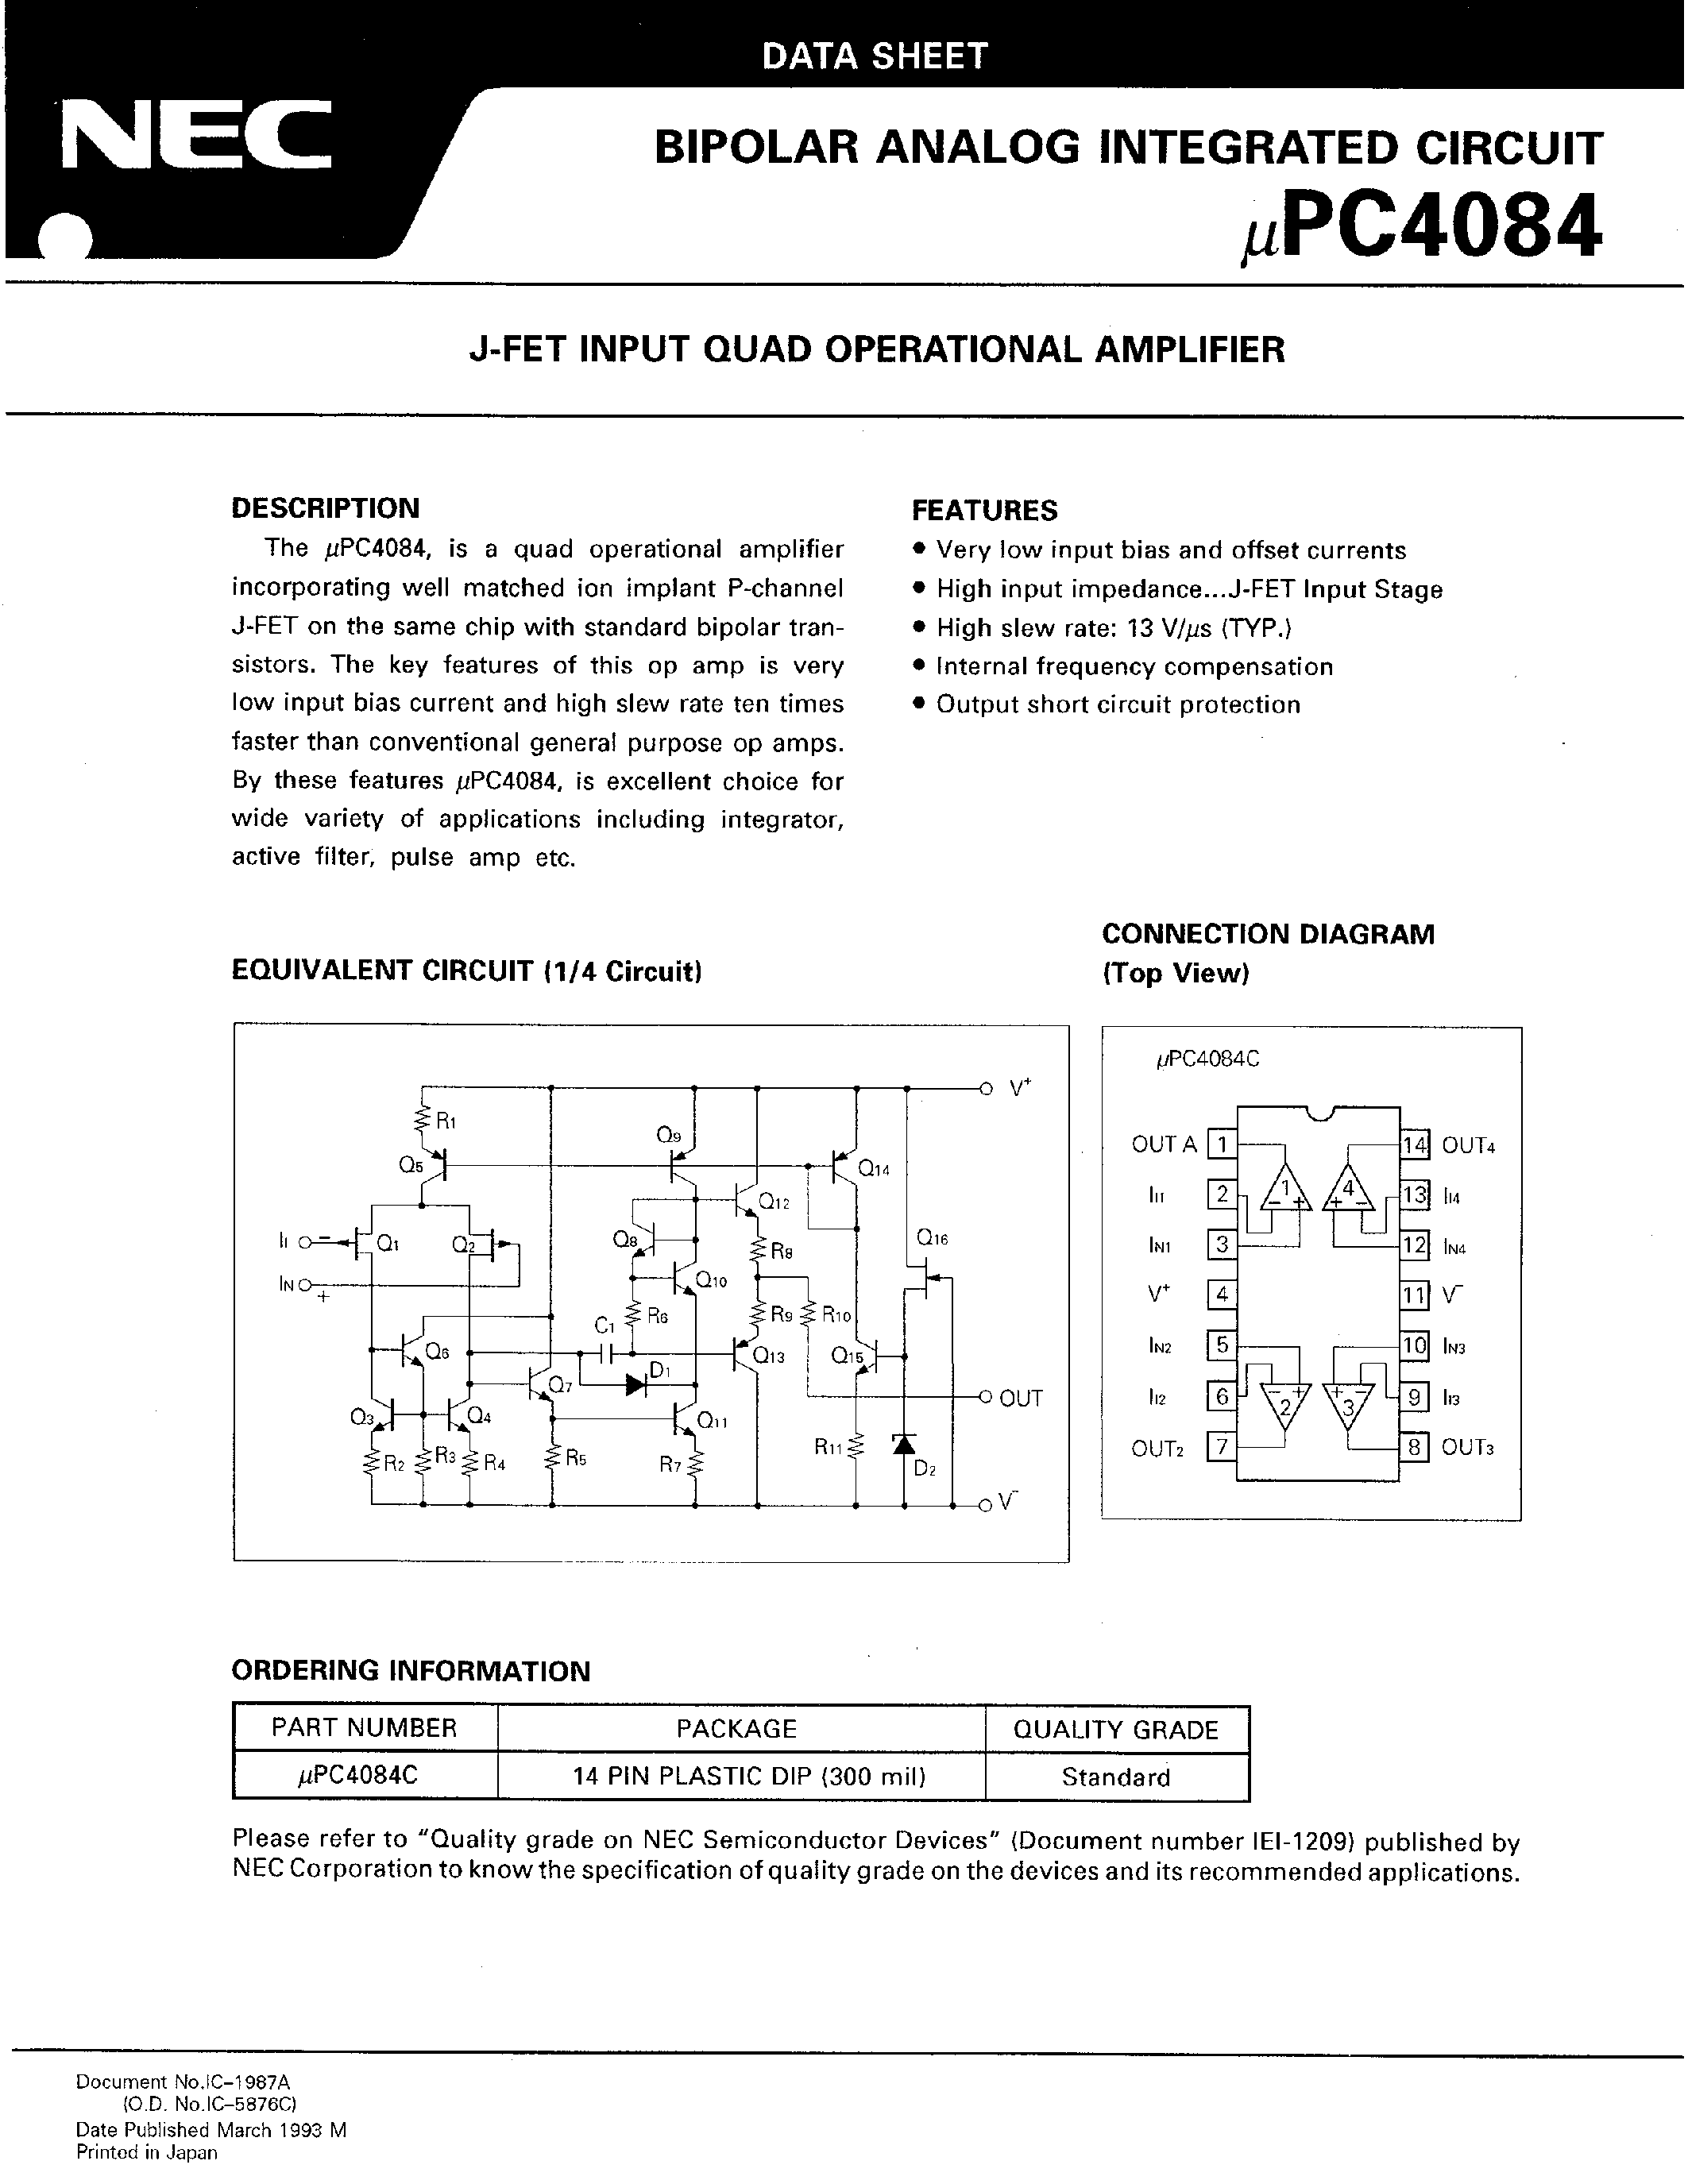 Даташит UPC4084 - J-FET INPUT QUAD OPERATIONAL AMPLIFIER страница 1